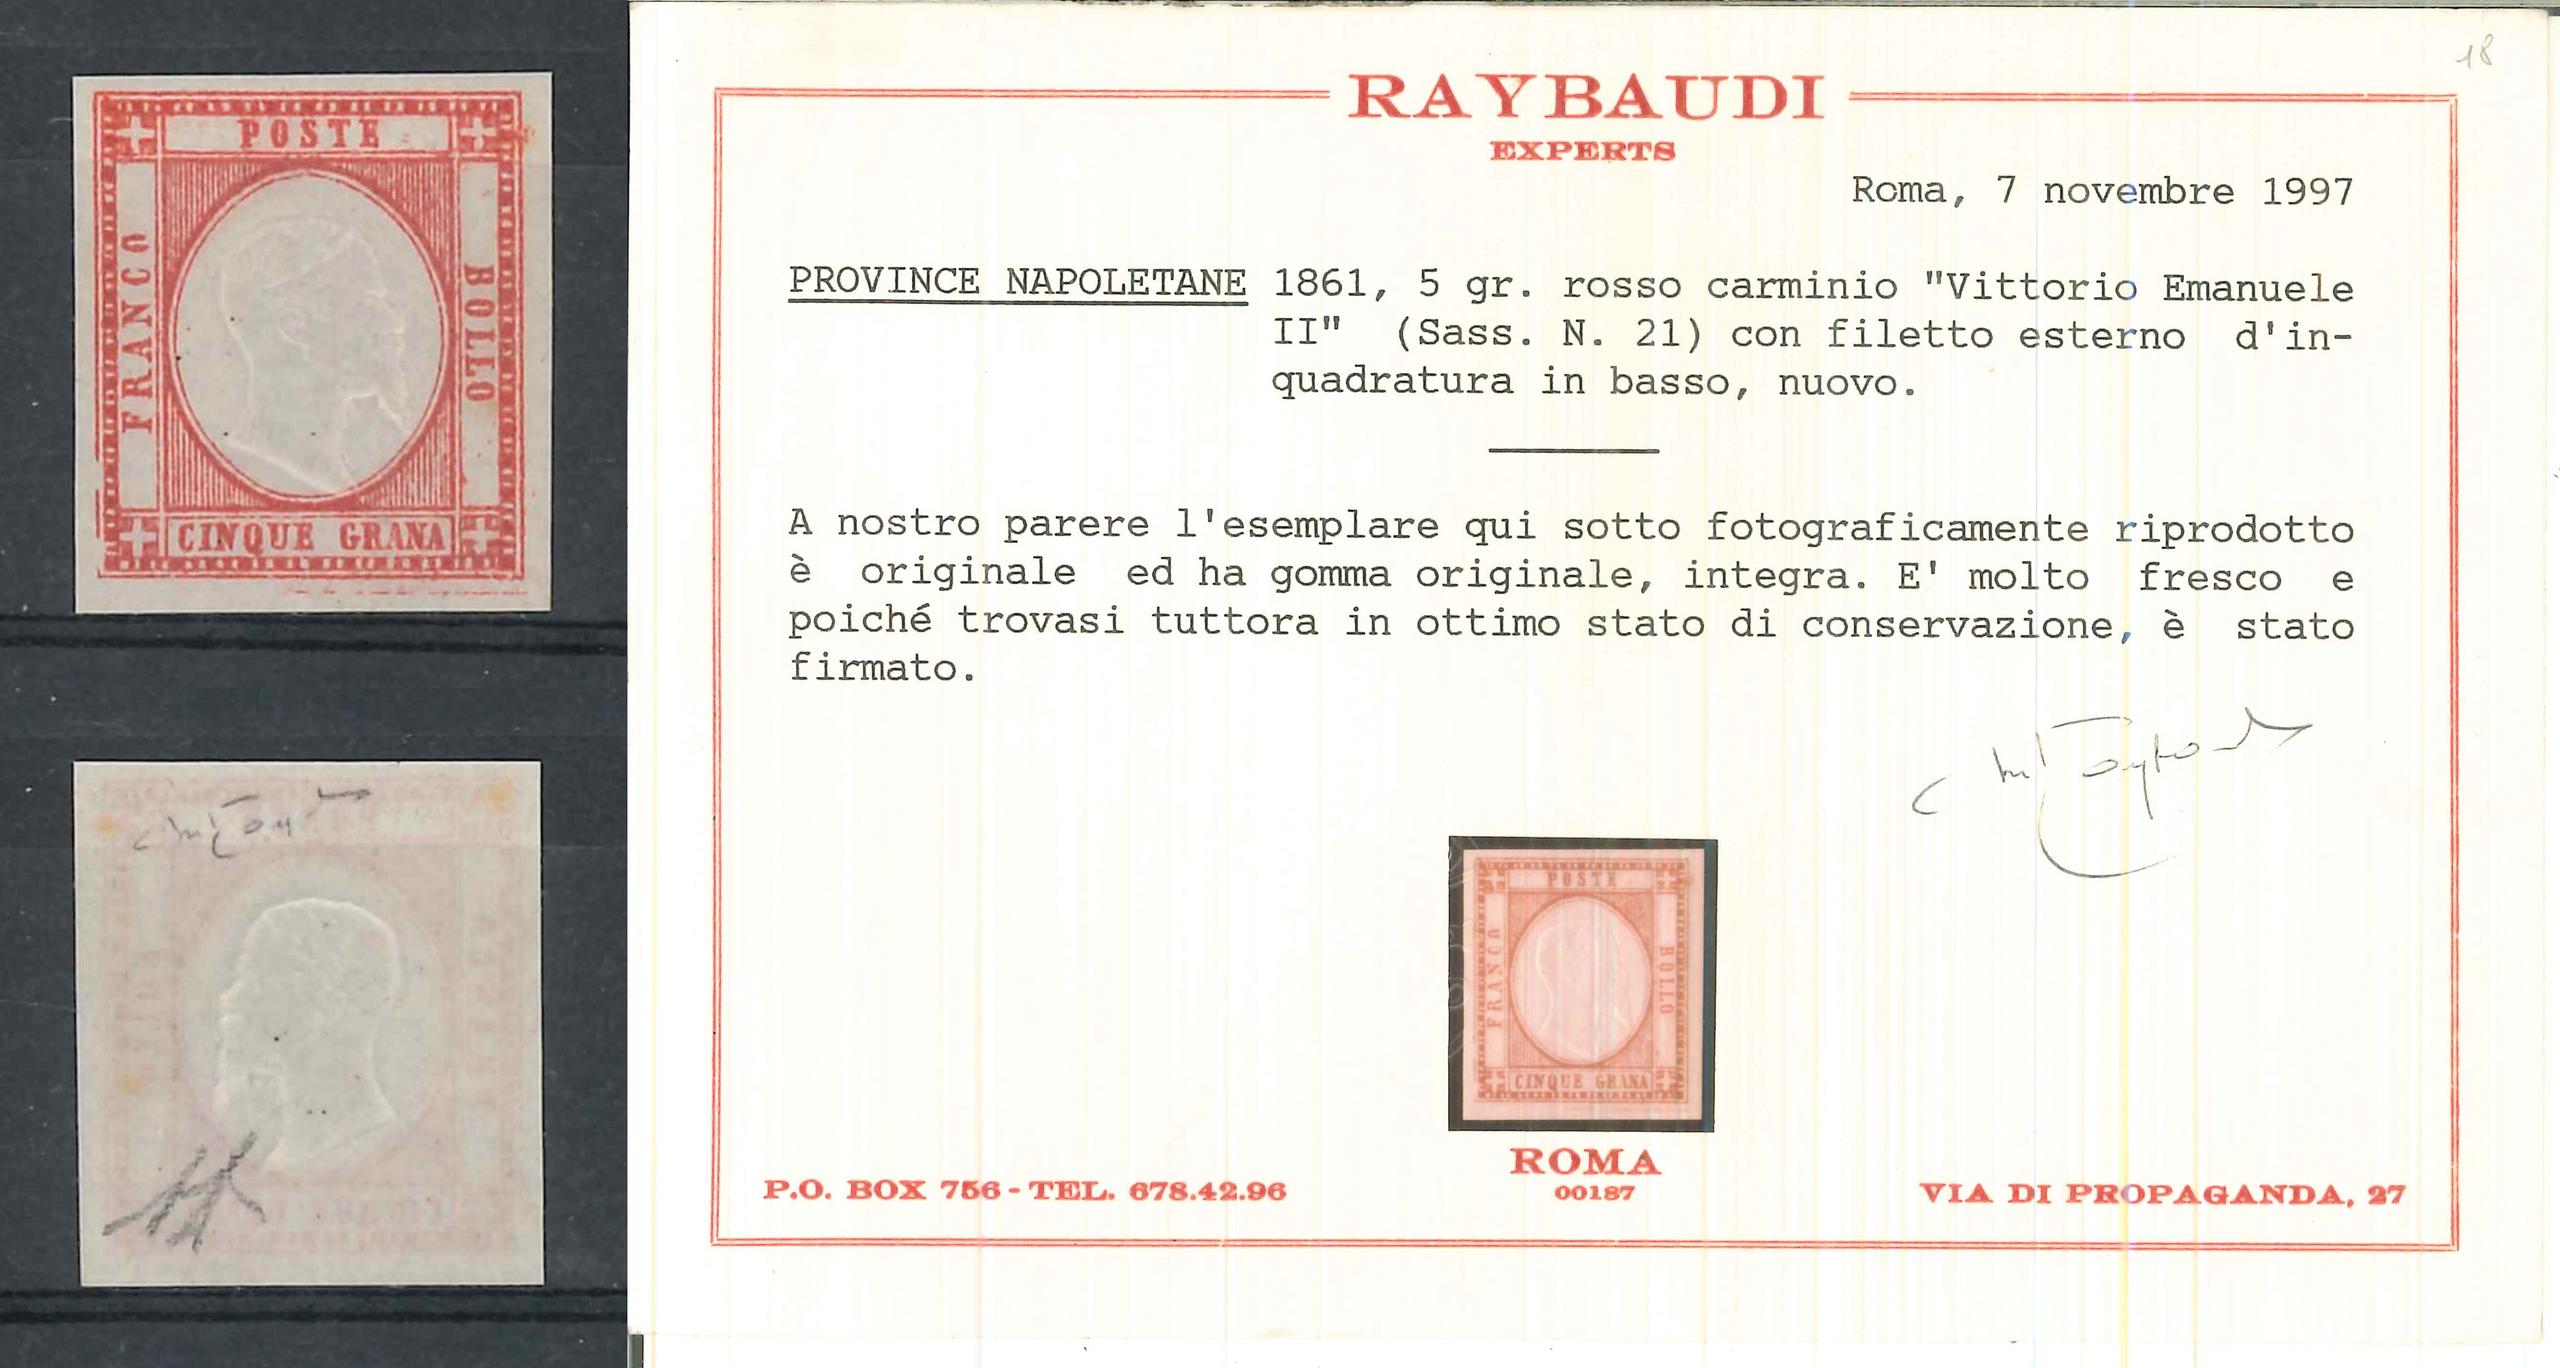 ASI PROVINCE NAPOLETANE -1861 ** (Catalogo Sassone n.° 21 rosso carminio + filetto inquadratura)